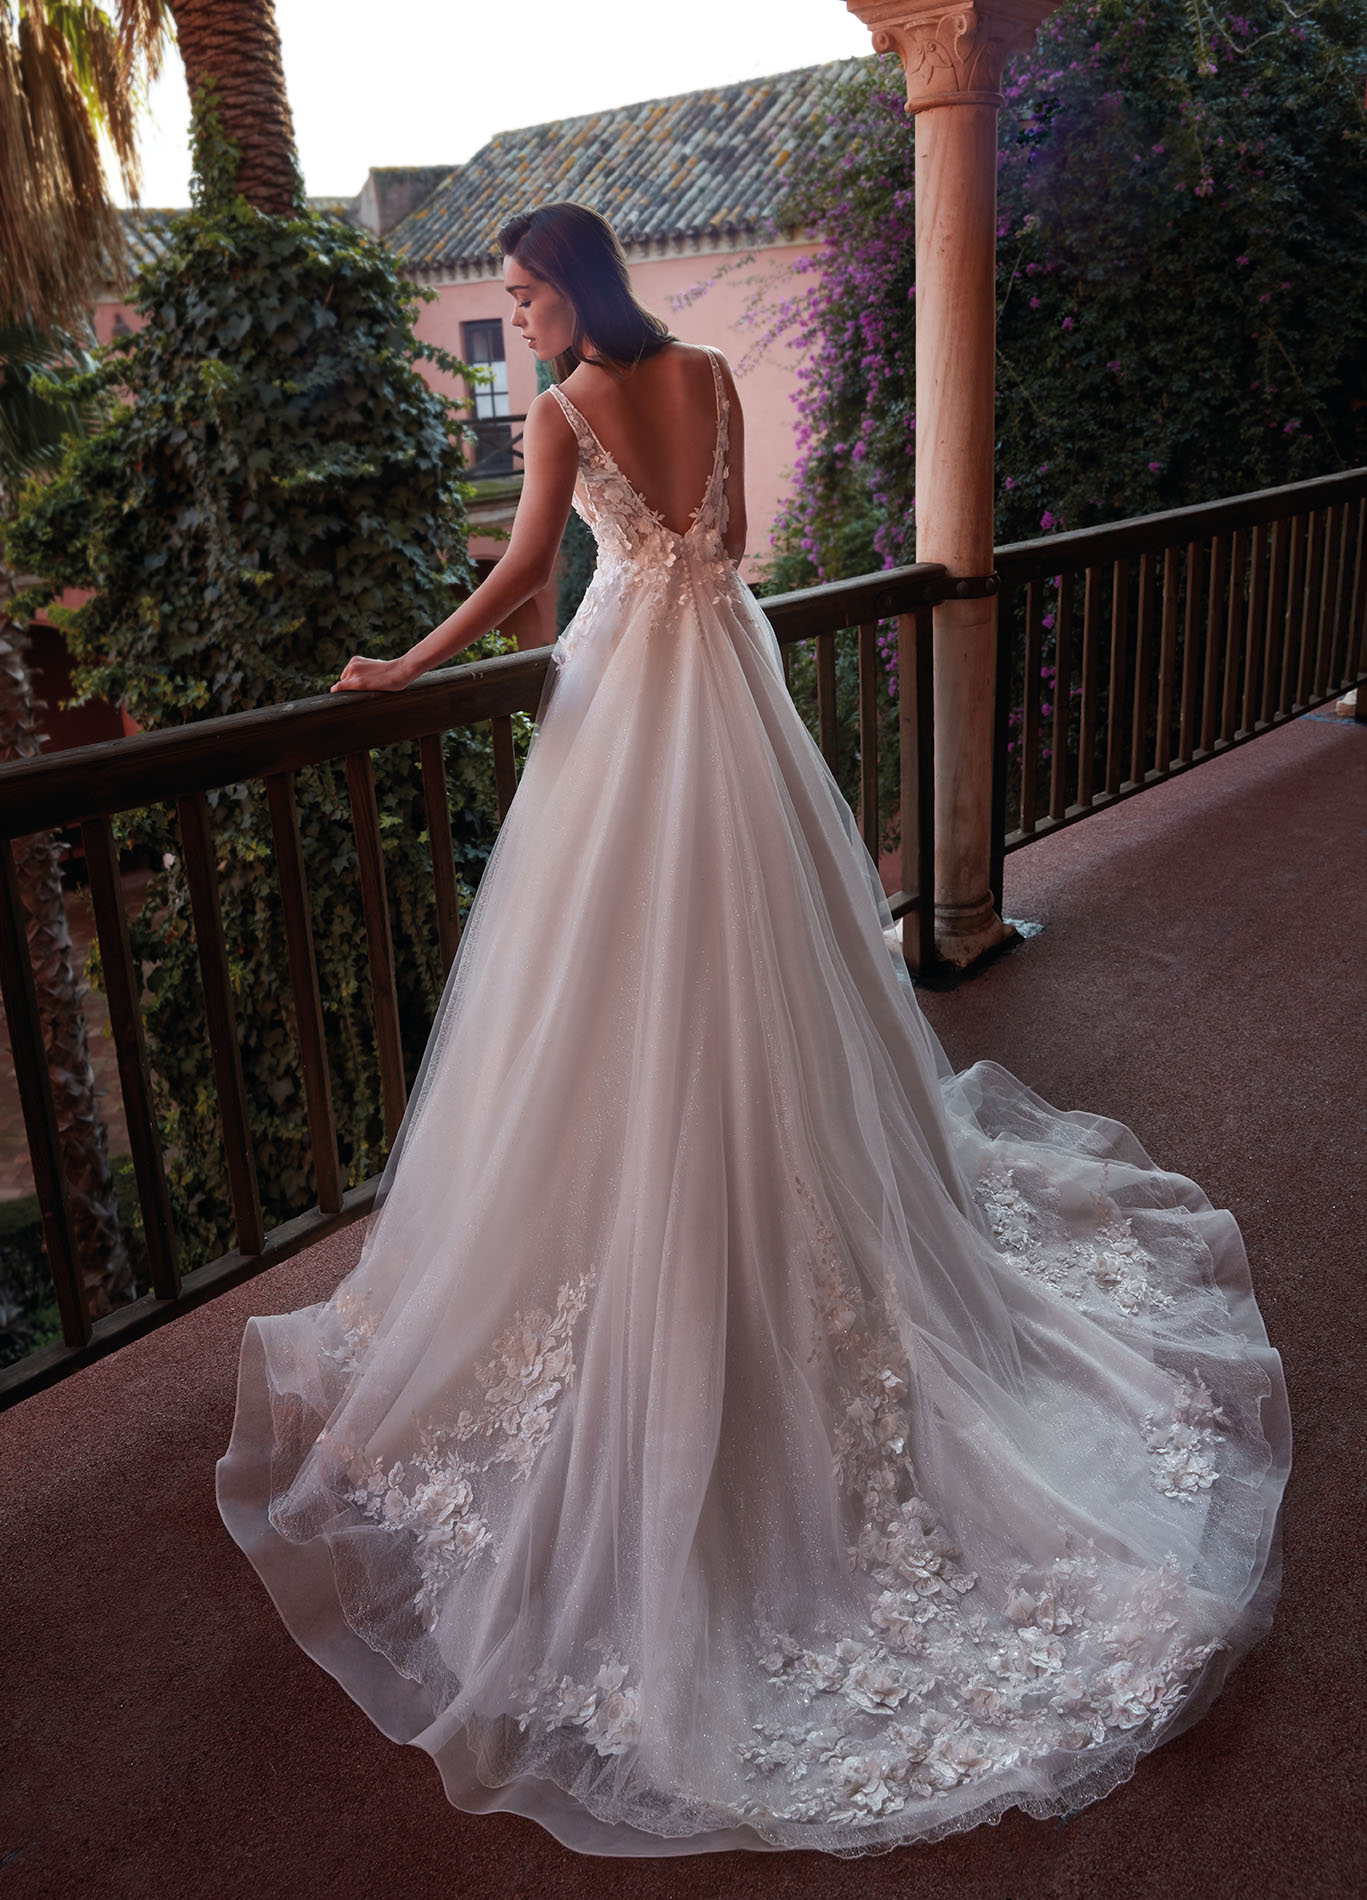 Espaldas sensuales en los vestidos de novia de Manu García | Blog  HigarNovias